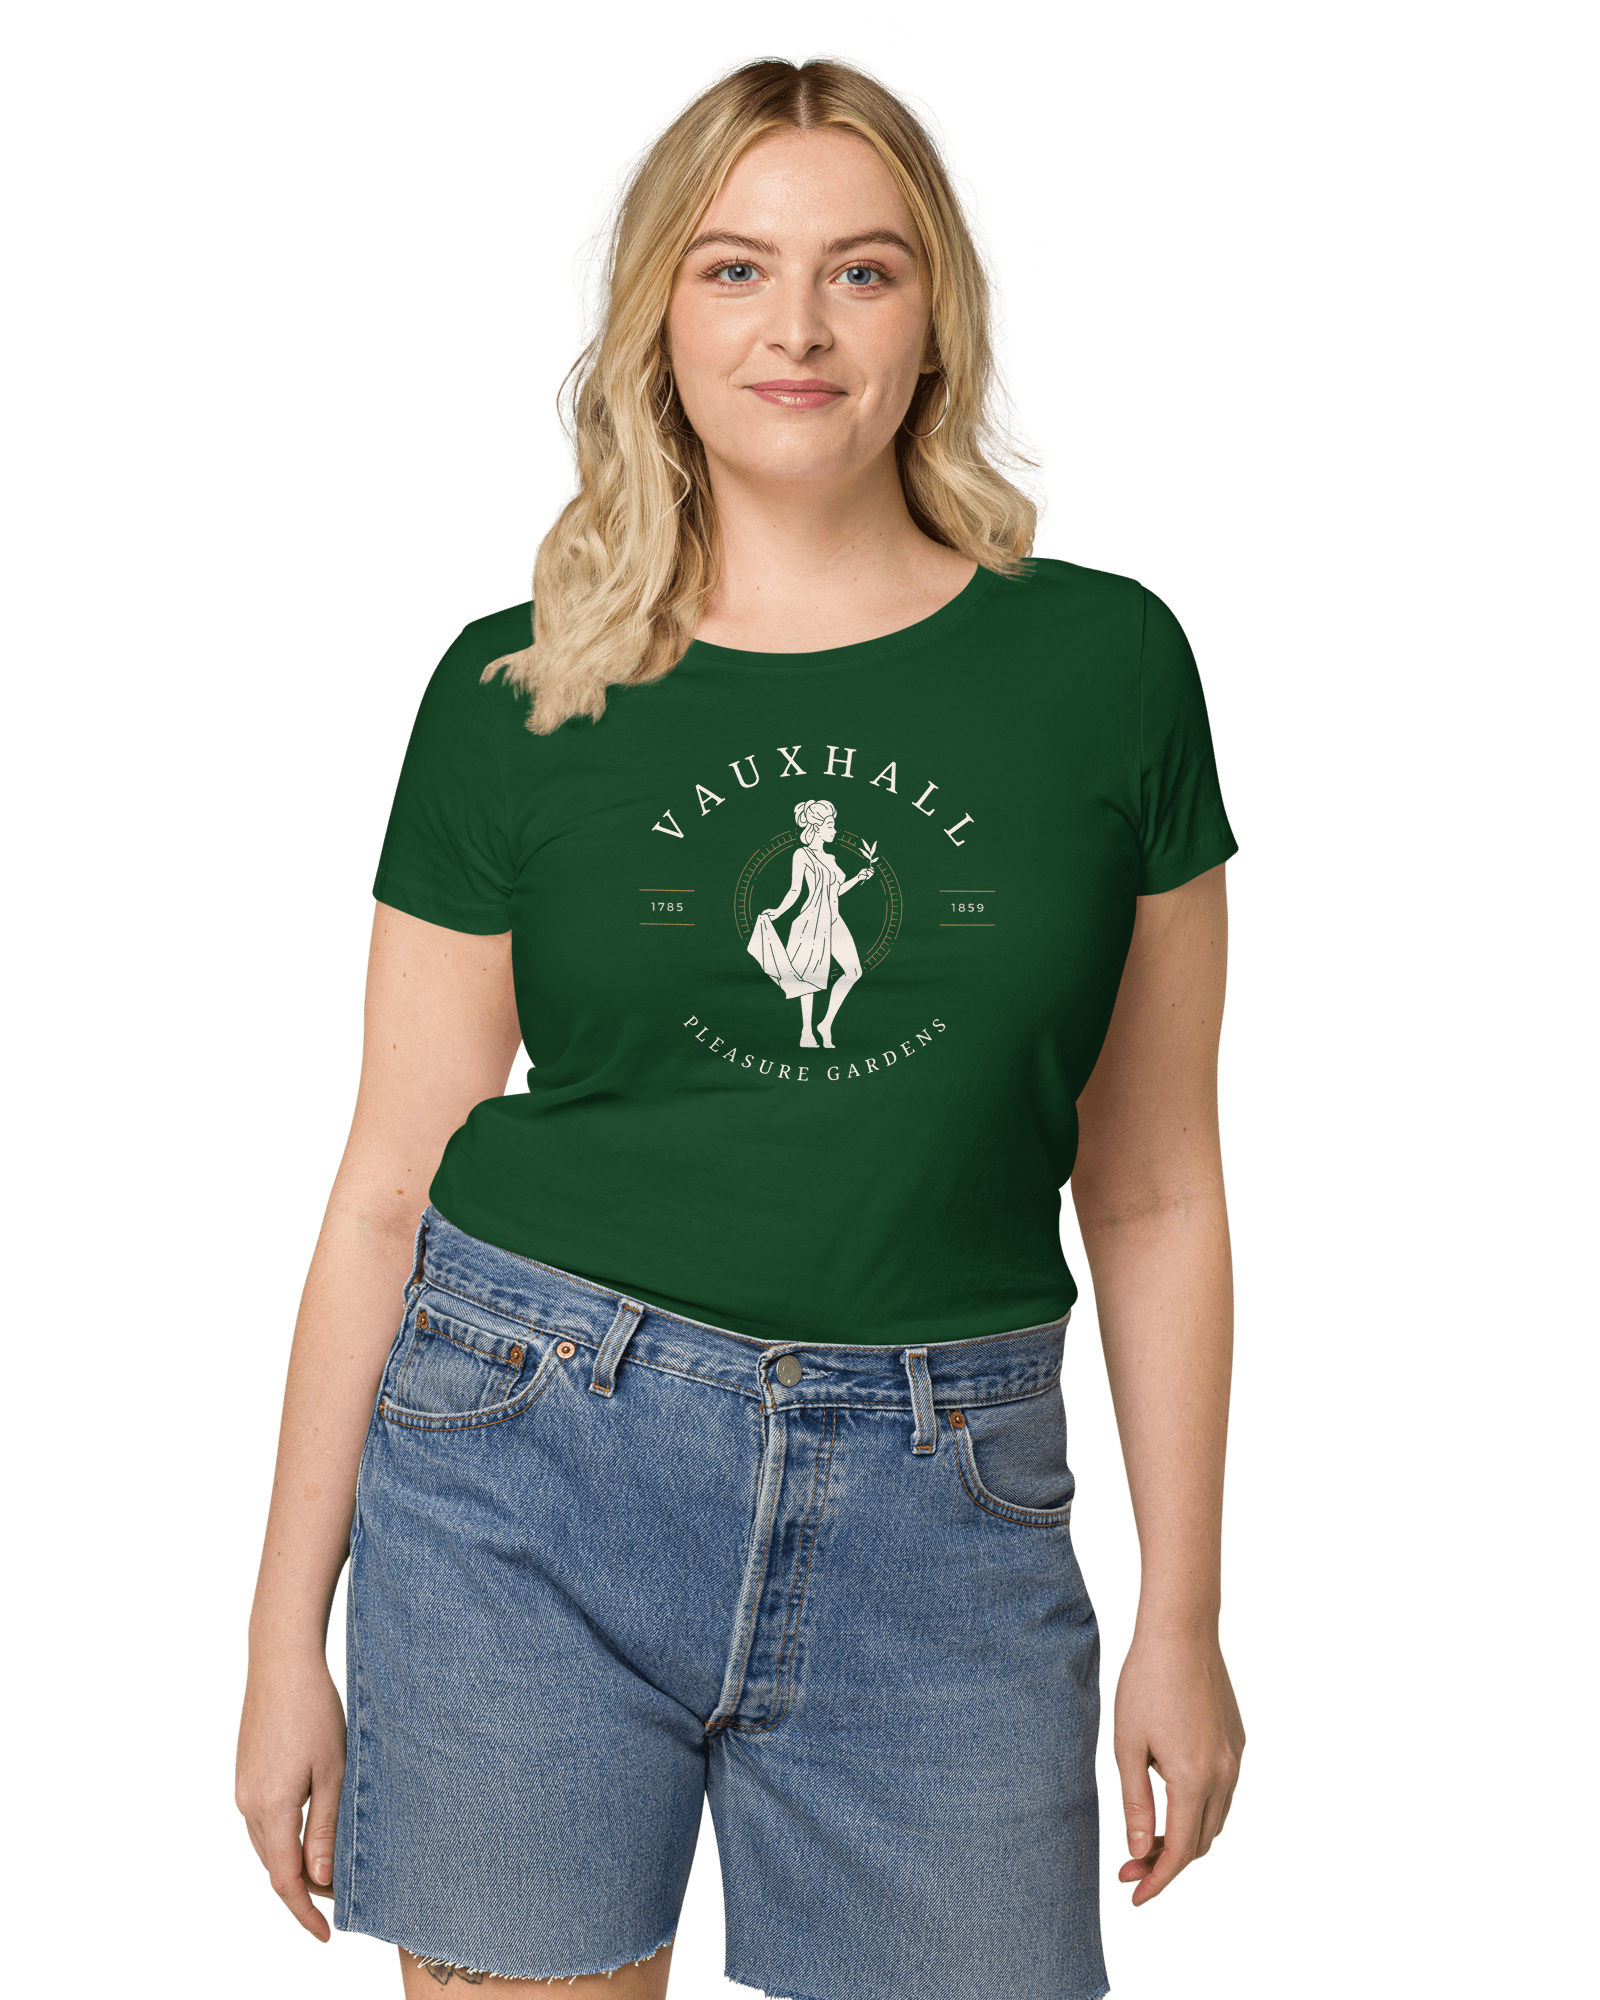 Vauxhall Pleasure Gardens Women’s Organic T-shirt Bottle Green / S Shirts & Tops Jolly & Goode